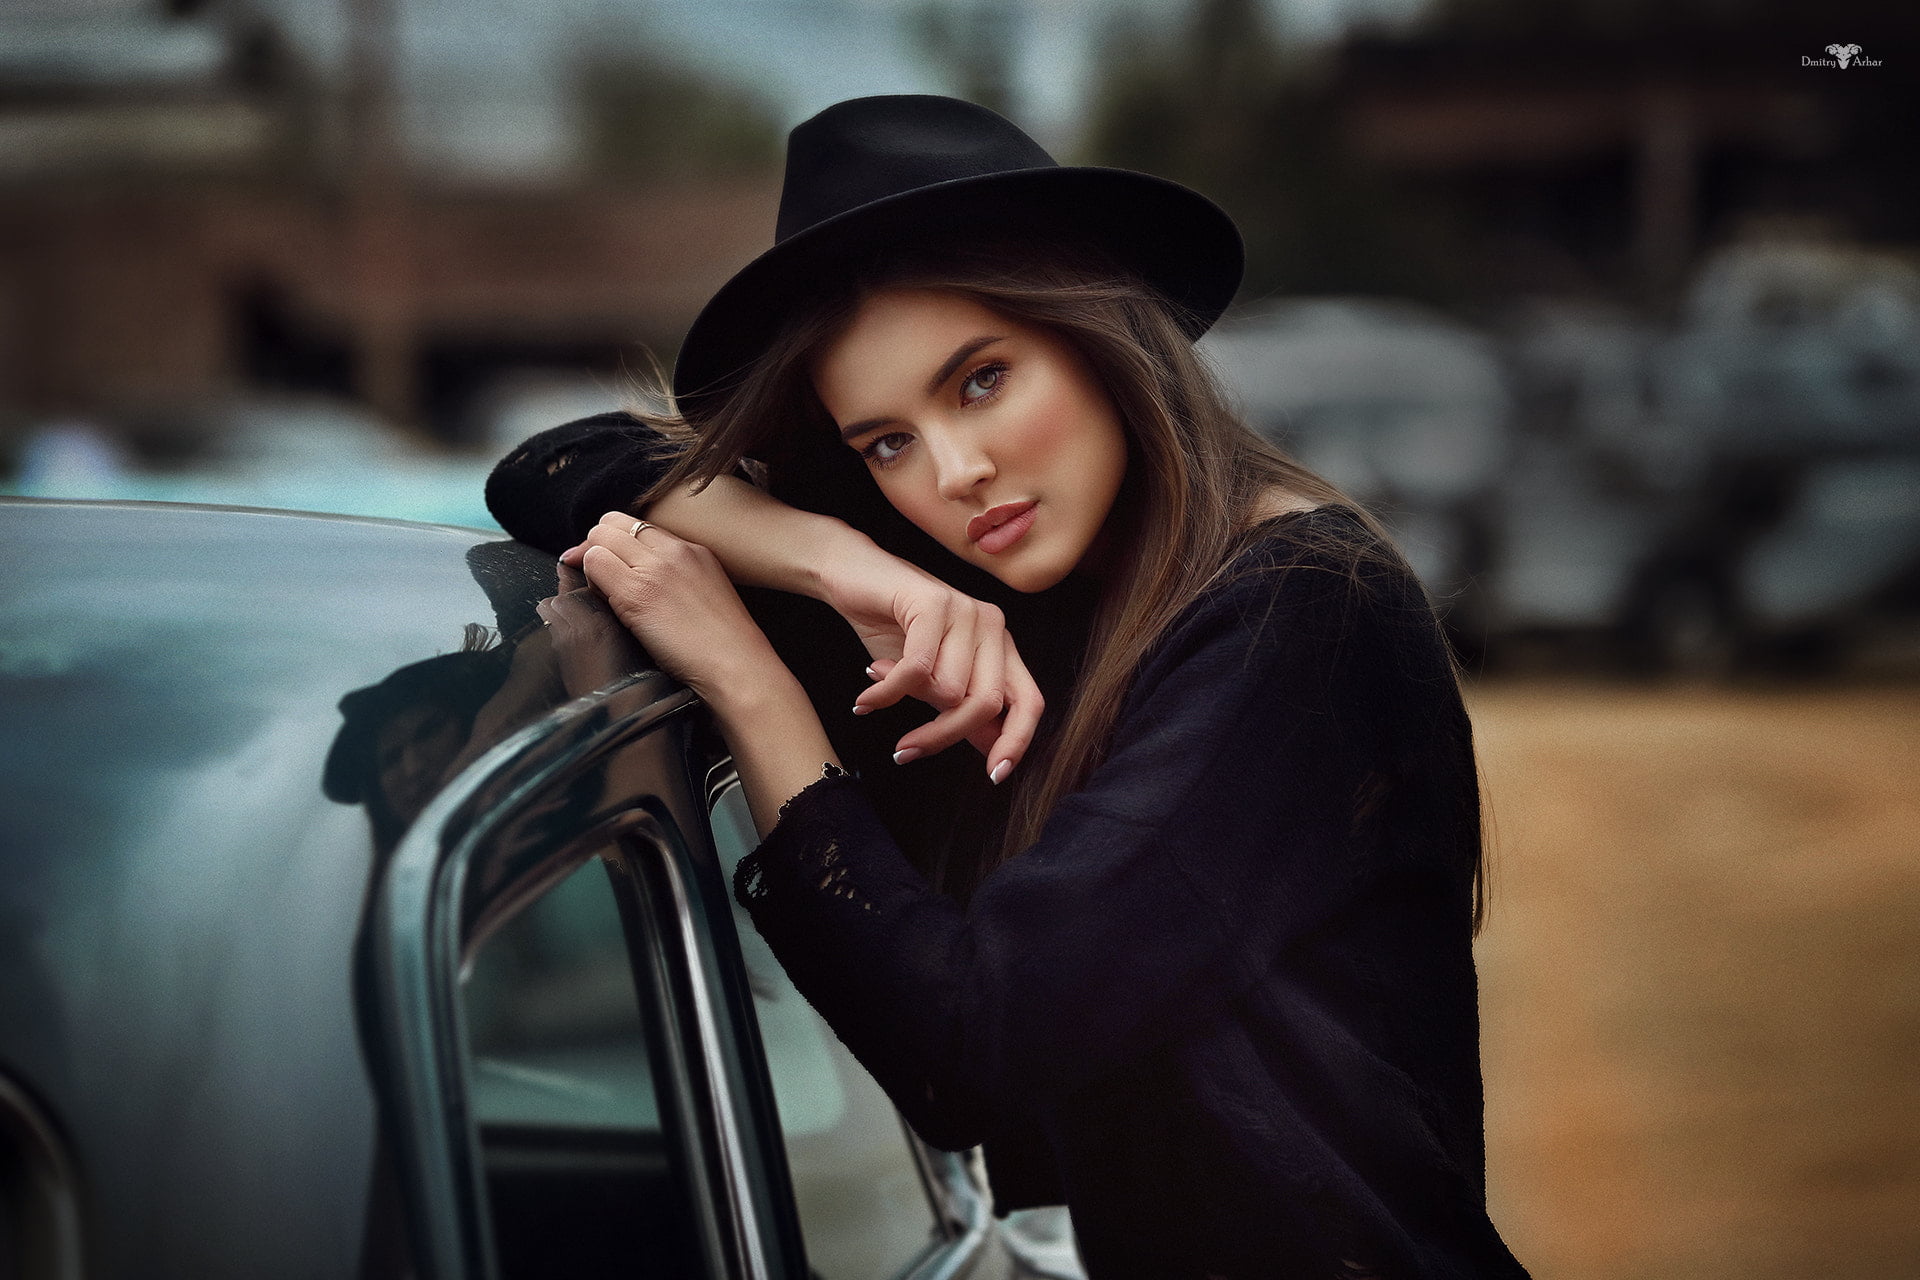 women, Dmitry Arhar, portrait, hat, women with cars, women with hats